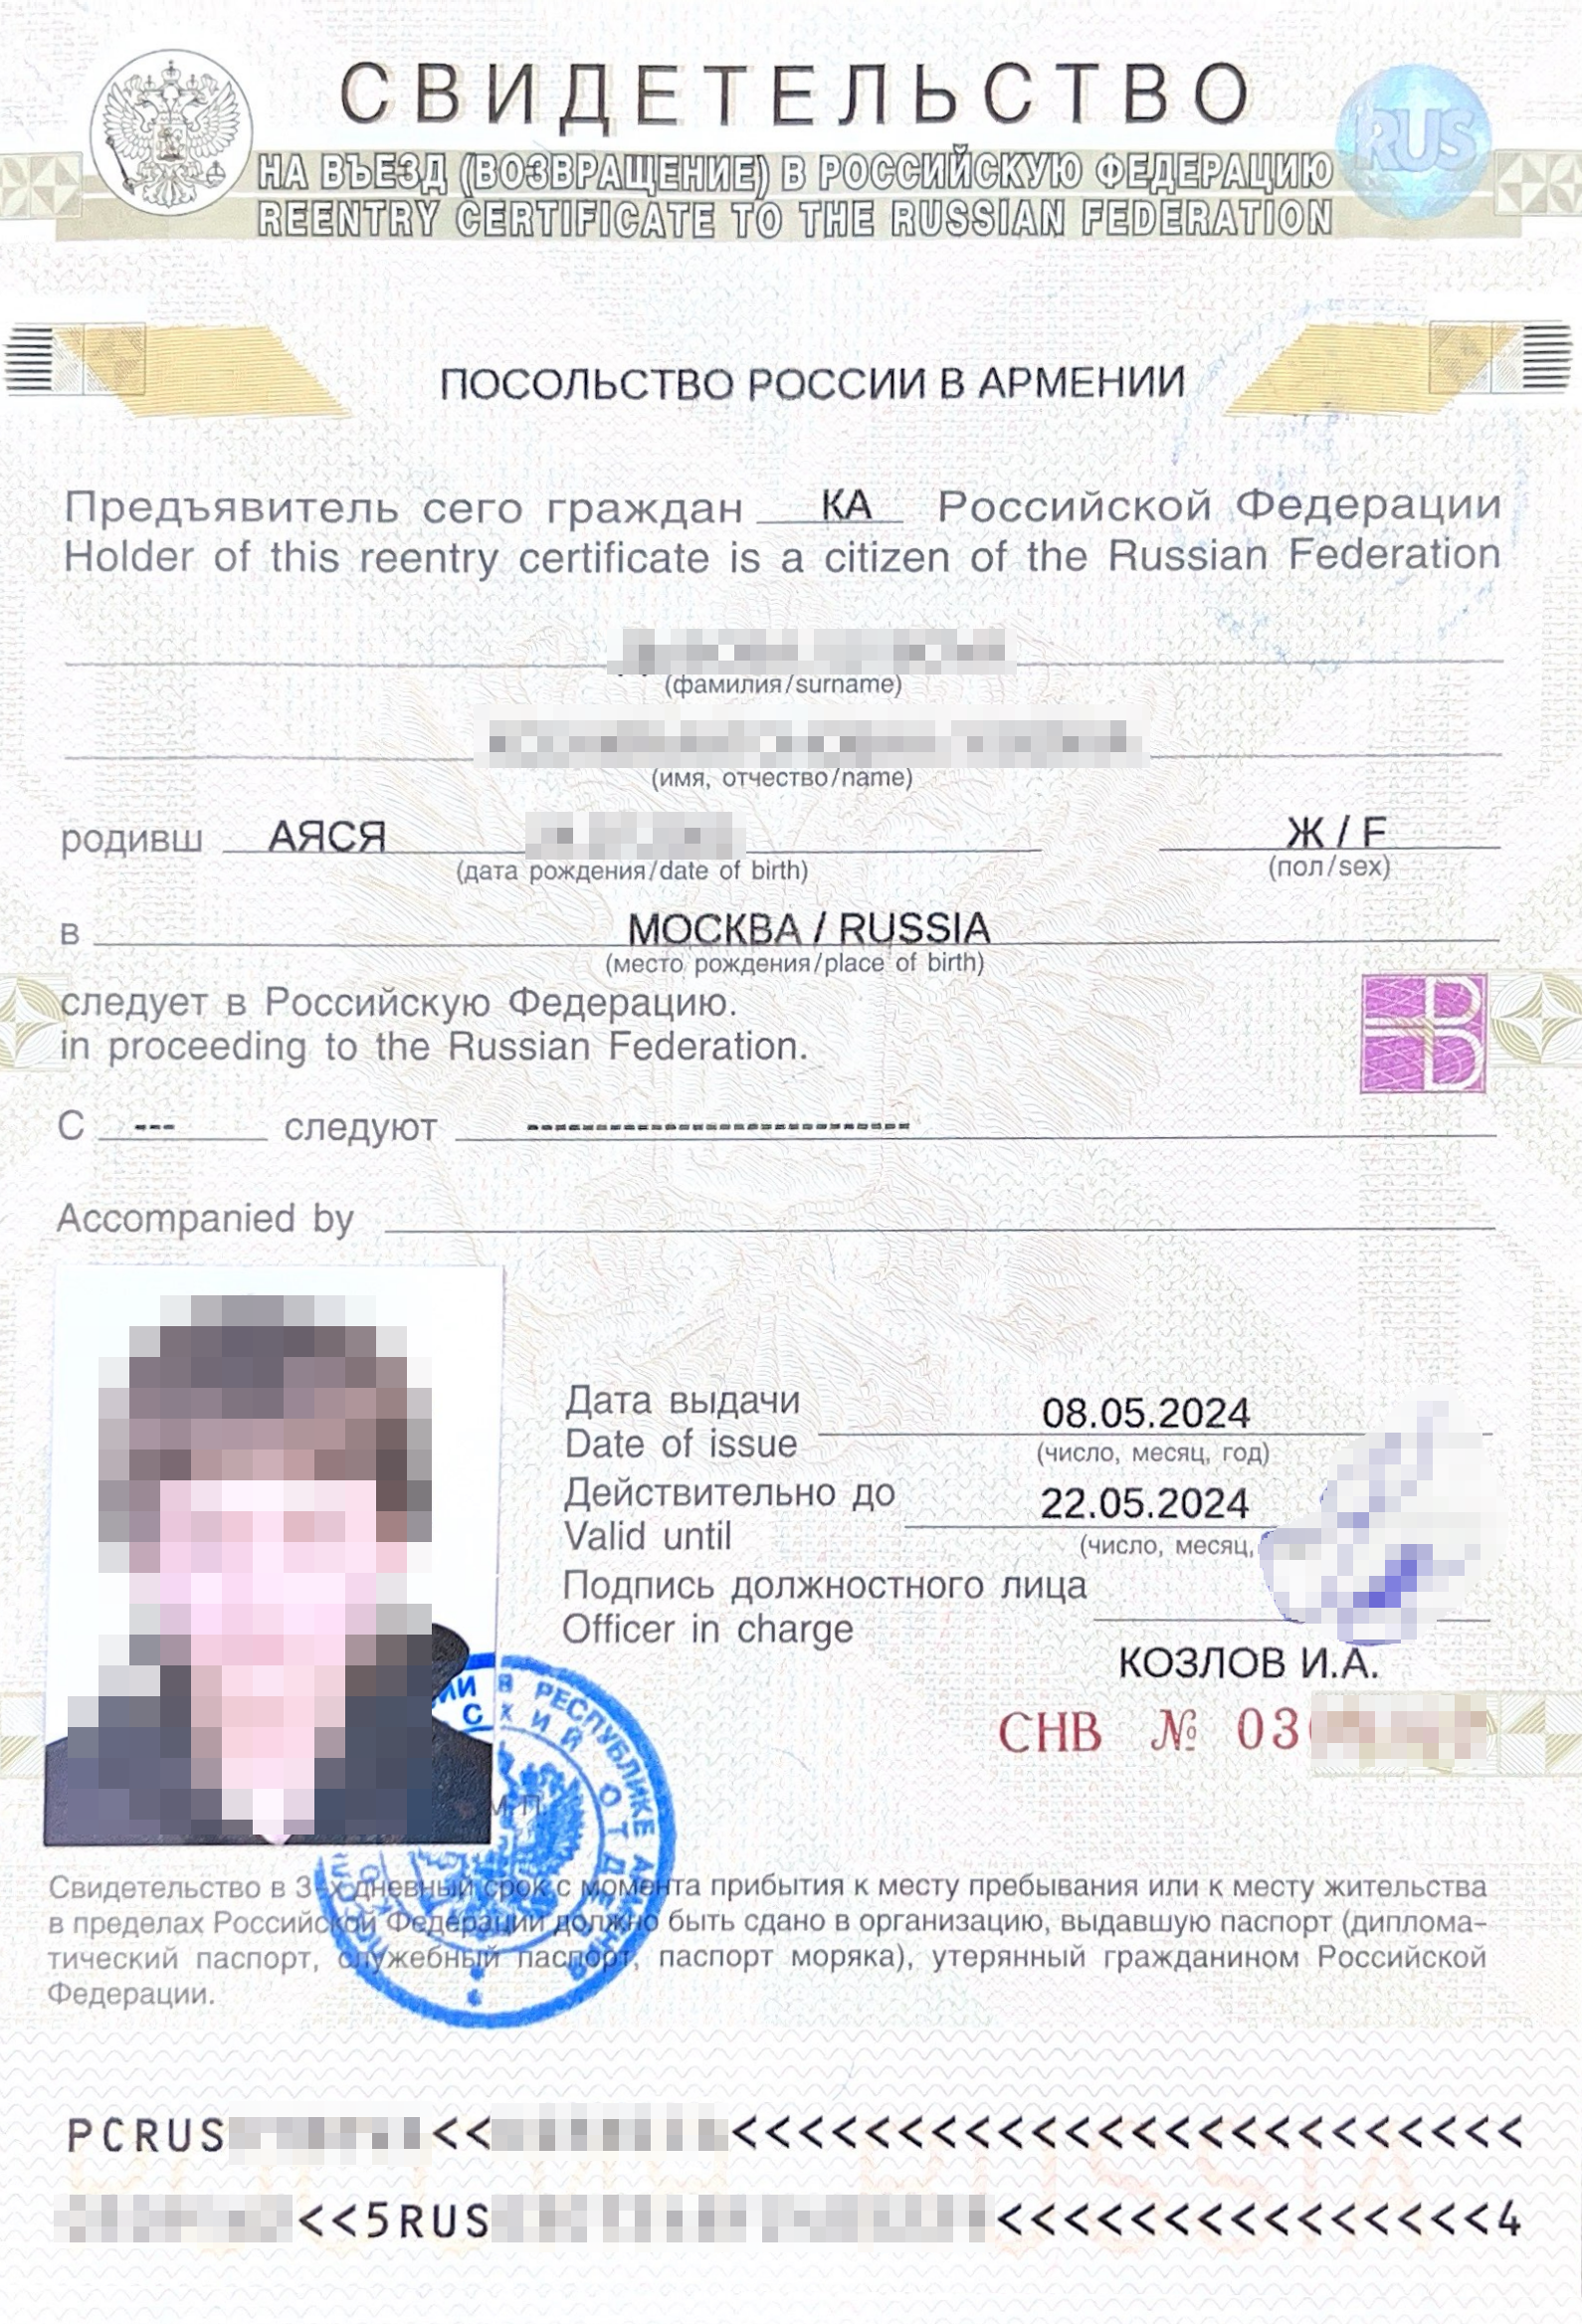 Свидетельство выдается на номерном бланке, поэтому по нему можно купить обратные билеты на самолет или поезд. Источник: rfsosetia.mid.ru